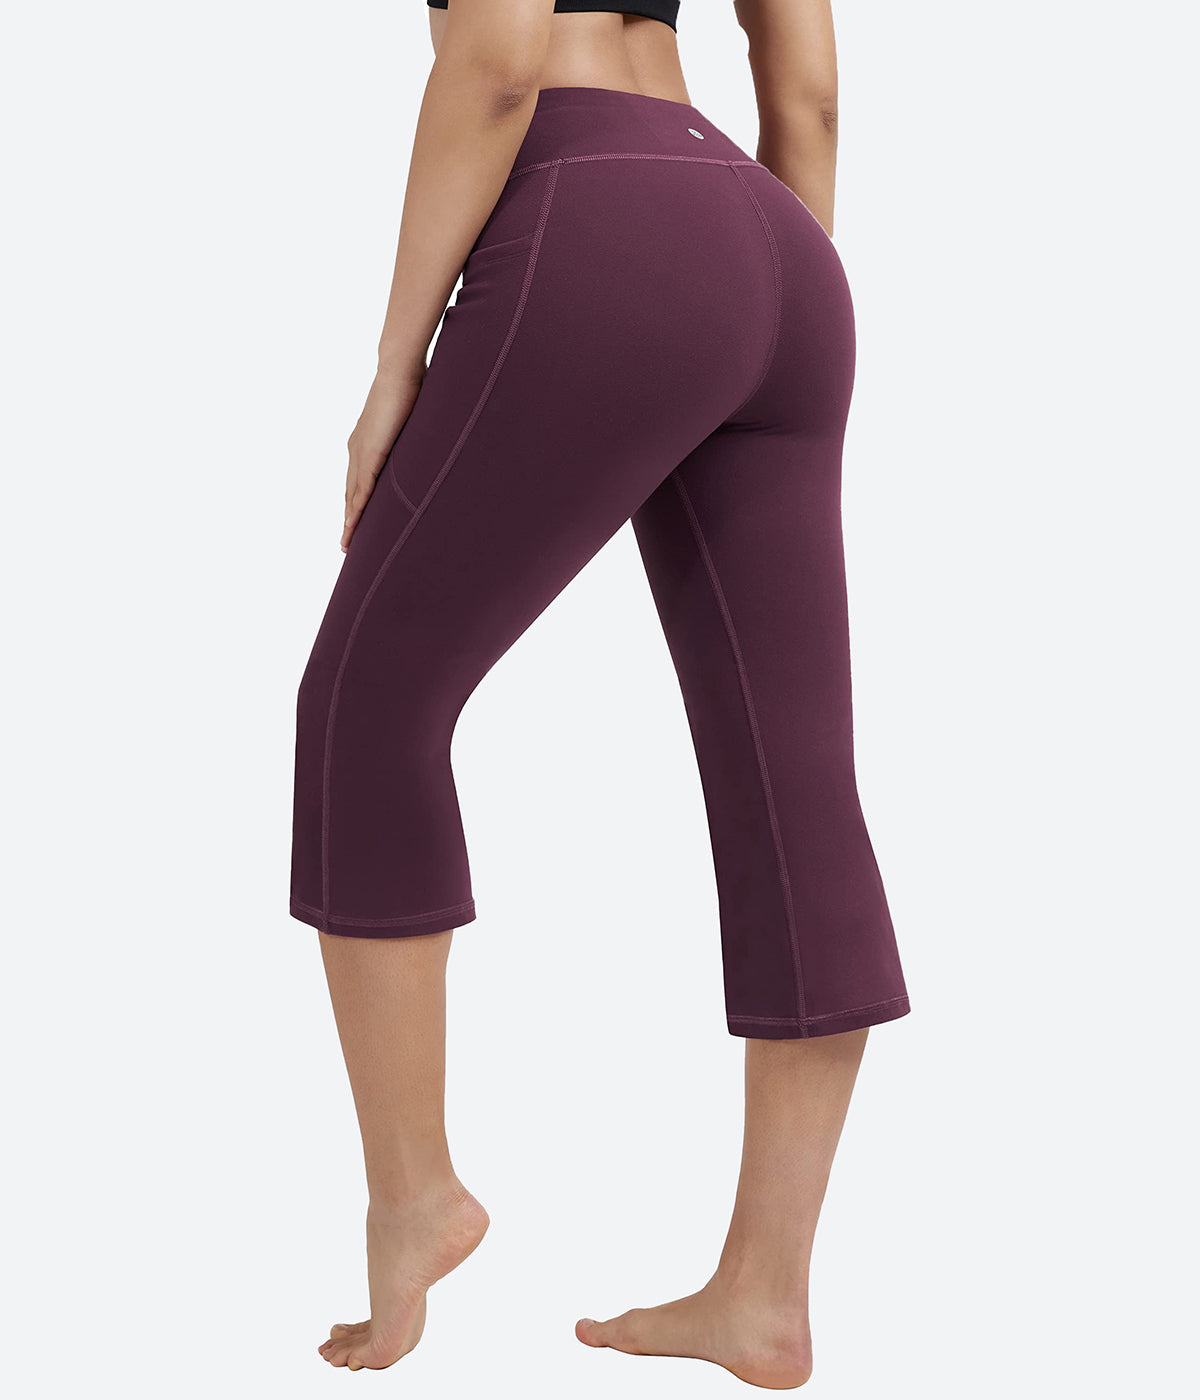 YUHAOTIN Yoga Pants with Pockets for Women Capri Christmas Causal